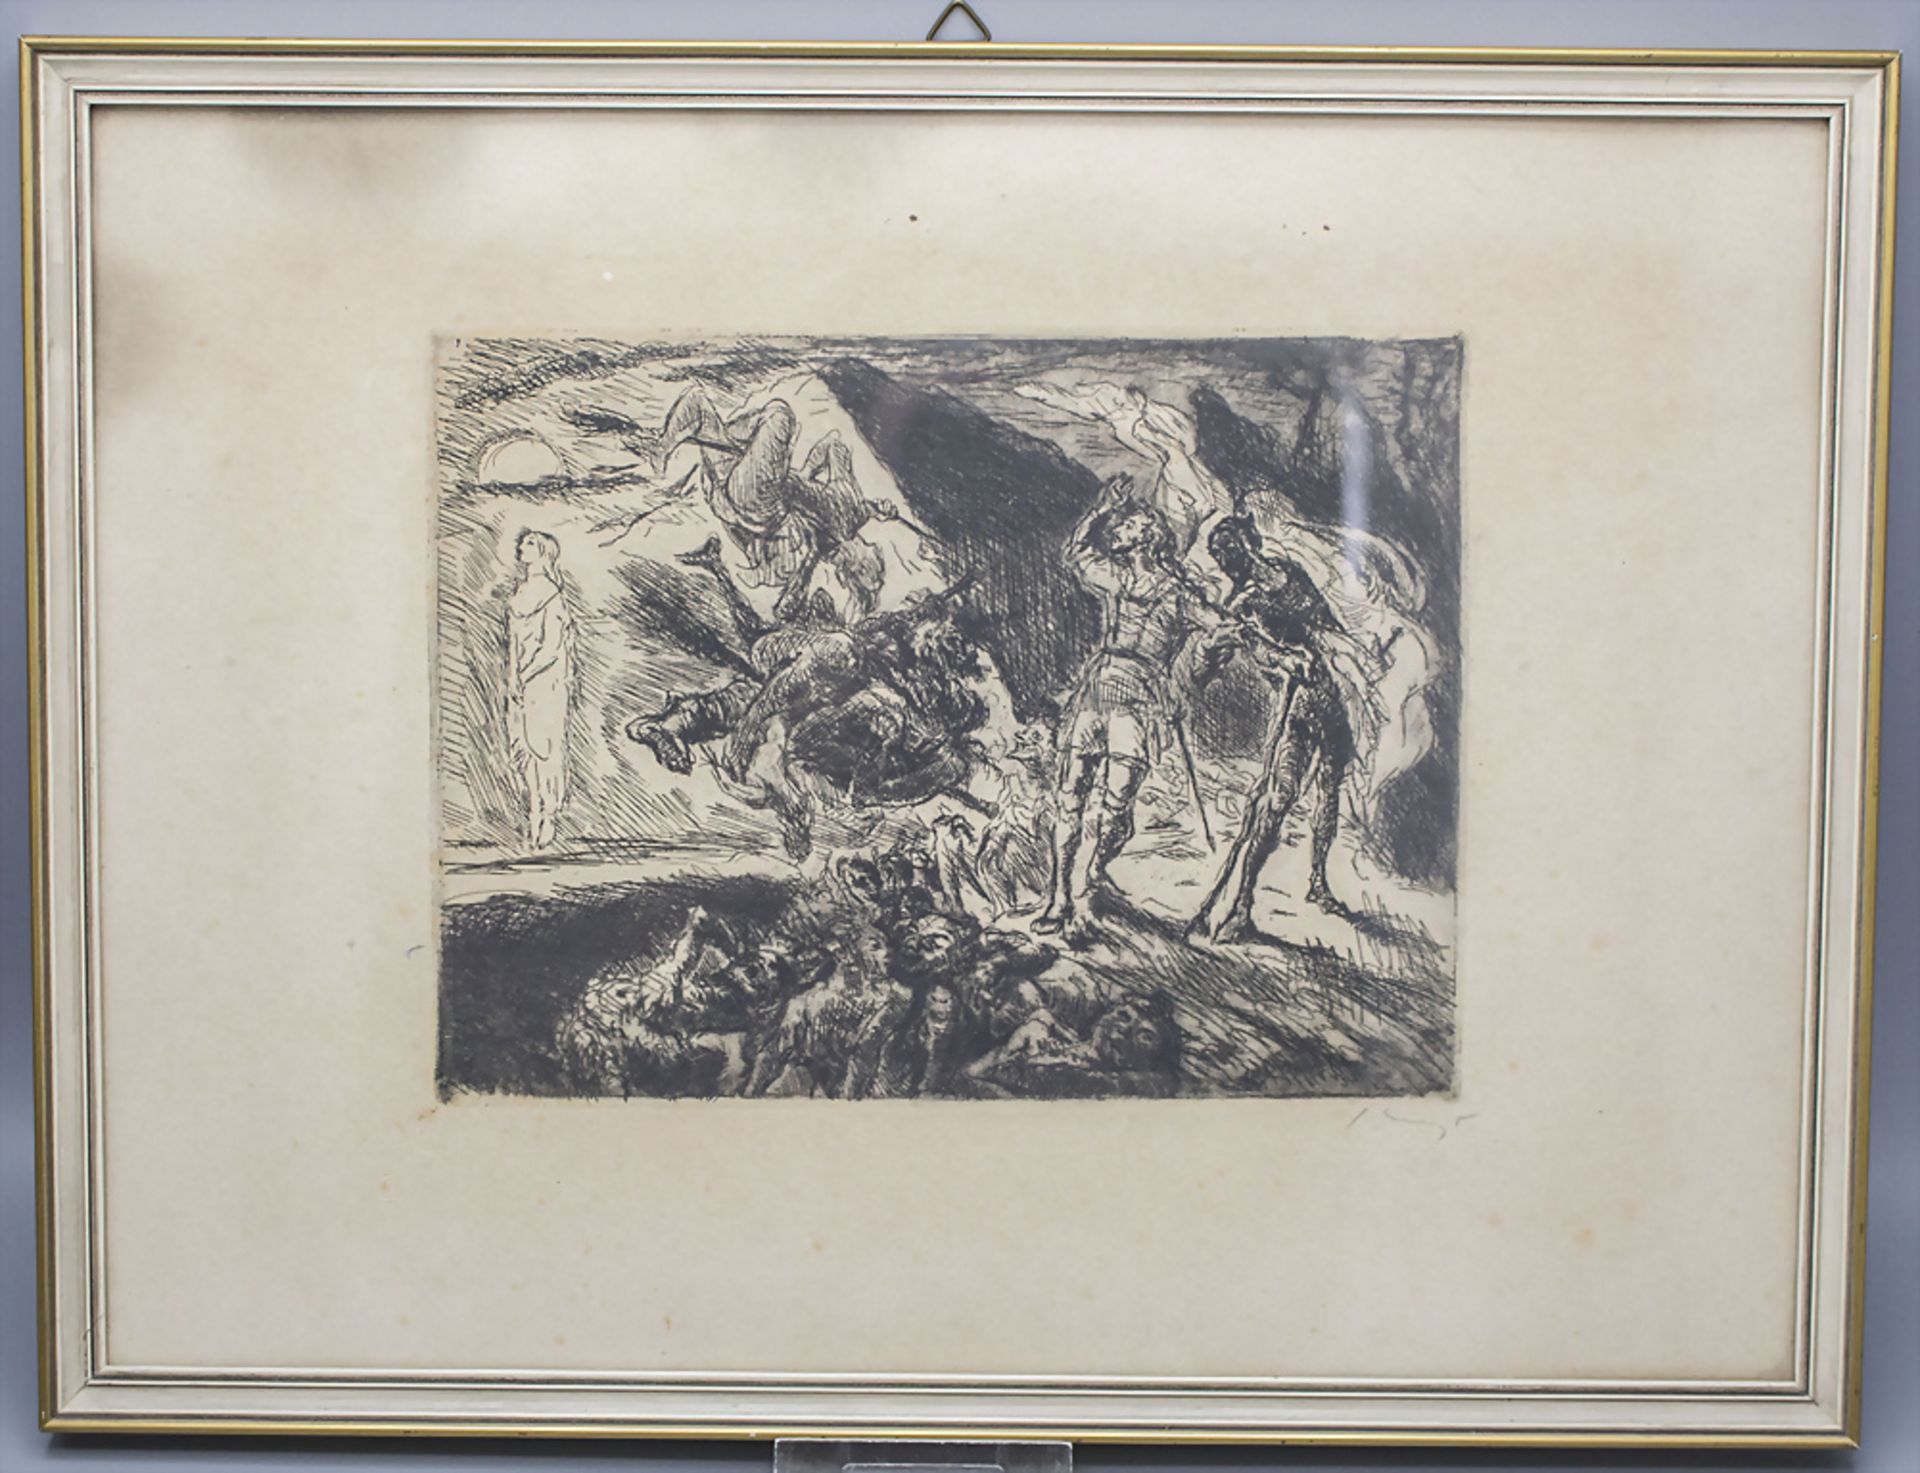 Max SLEVOGT (1868-1932), 'In der Walpurgisnacht' / 'Walpurgis Night' - Bild 2 aus 4